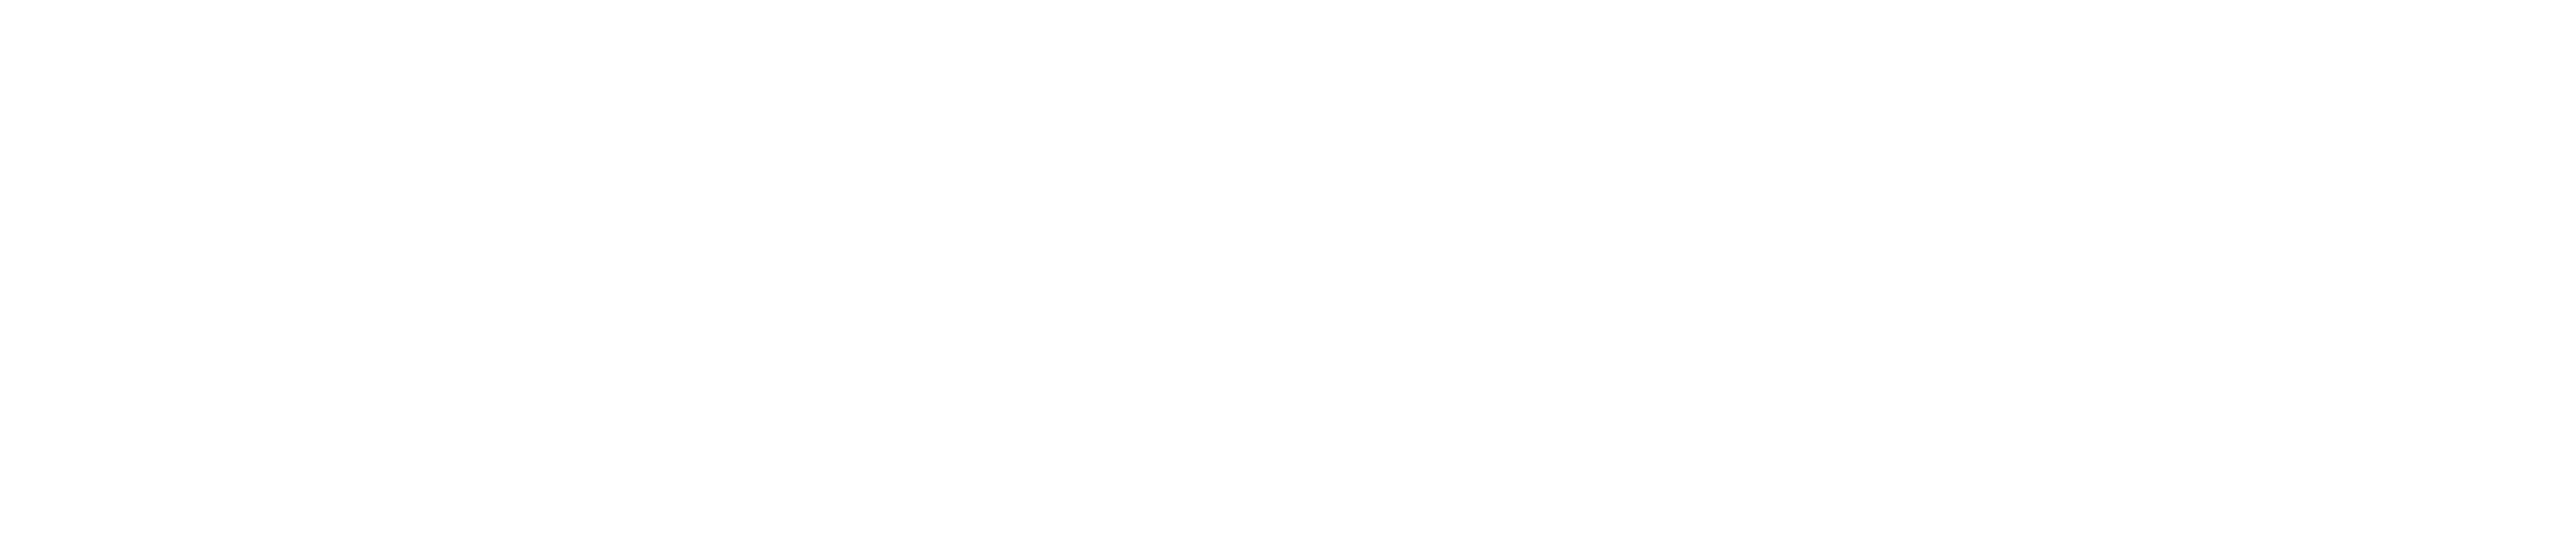 Agenzia Italia